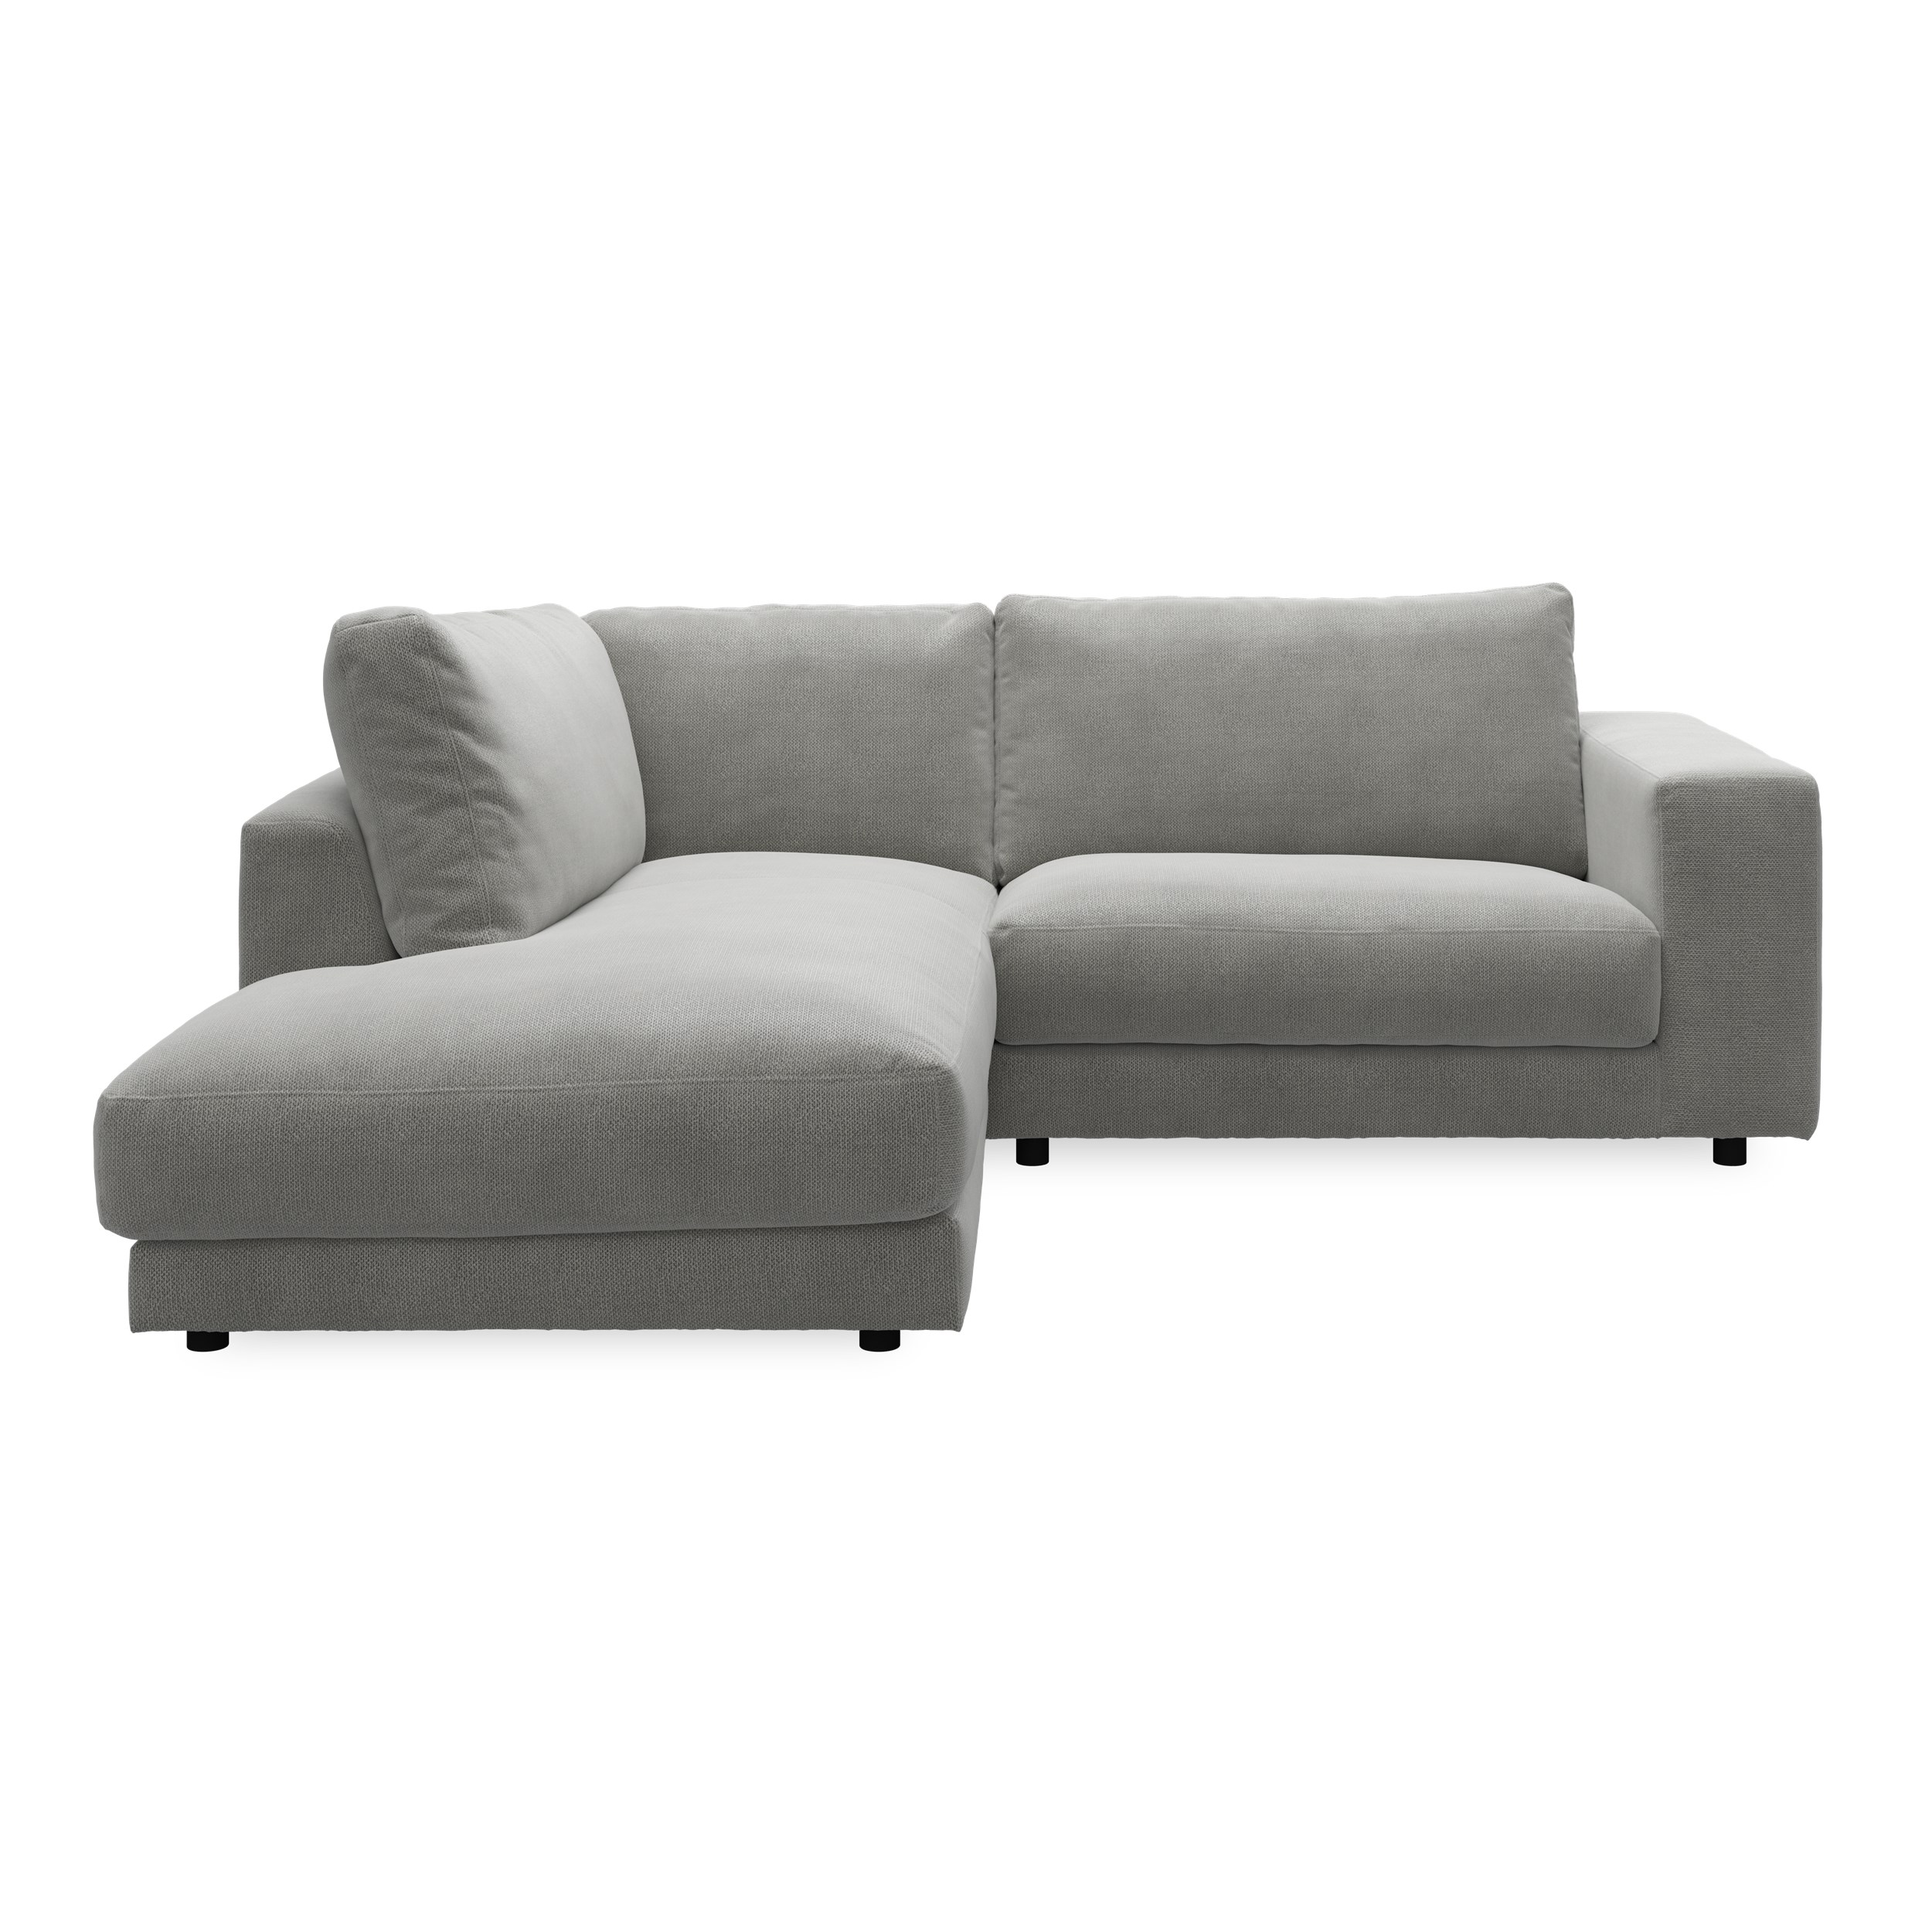 Bennent vänstervänd soffa med divan - Picasso Anthrazit klädsel, ben i svart plast och S:skum/fib/din/sili R:Dun/skum